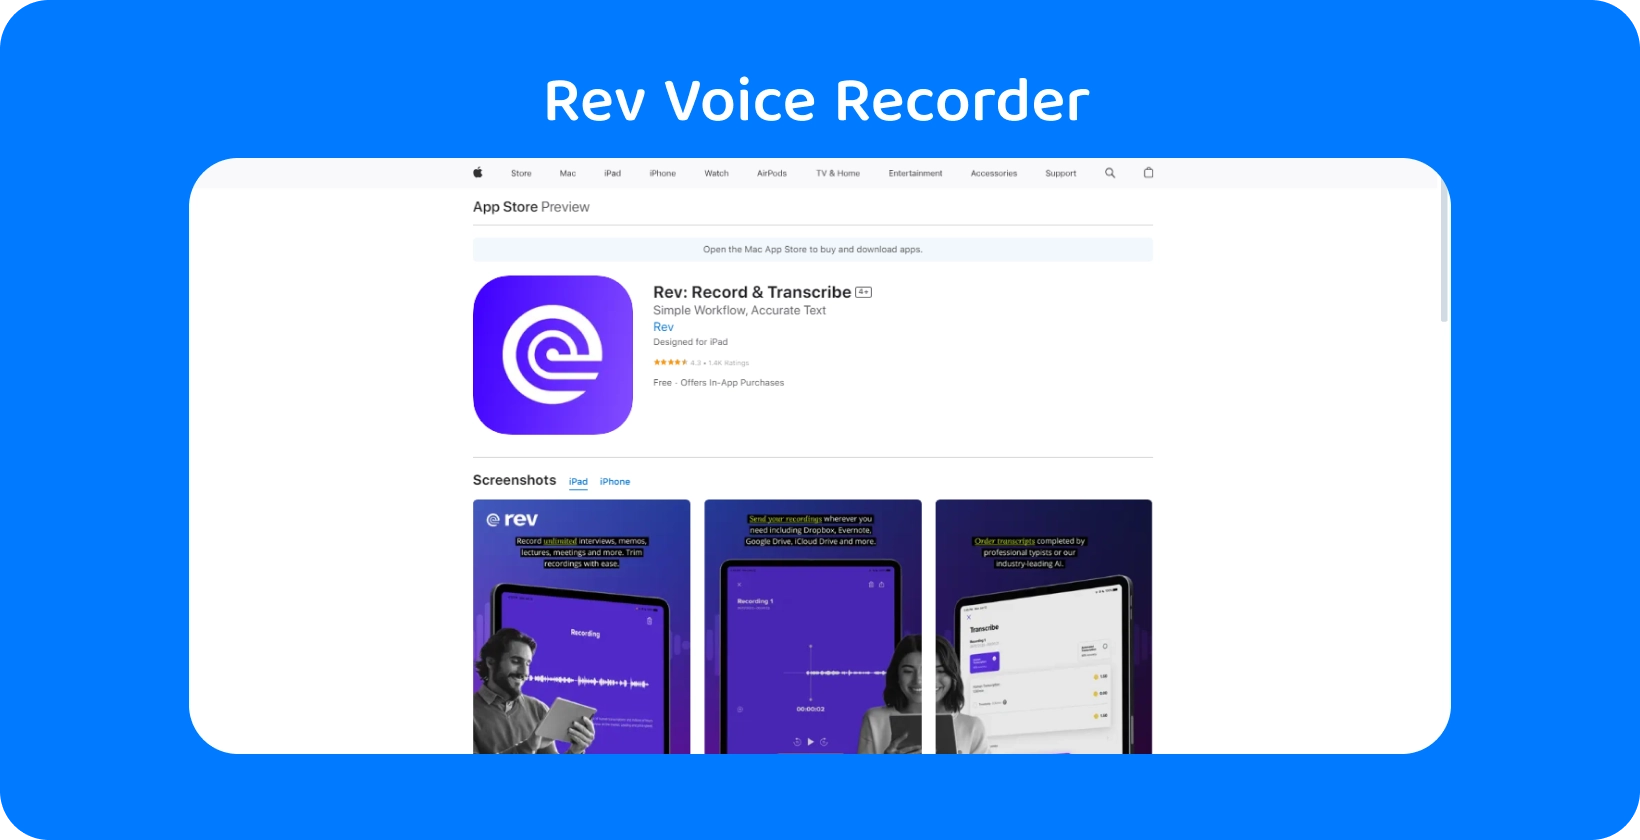 Rev Voice Recorder nell'Apple App Store, evidenziando il suo design elegante e le funzionalità di trascrizione.